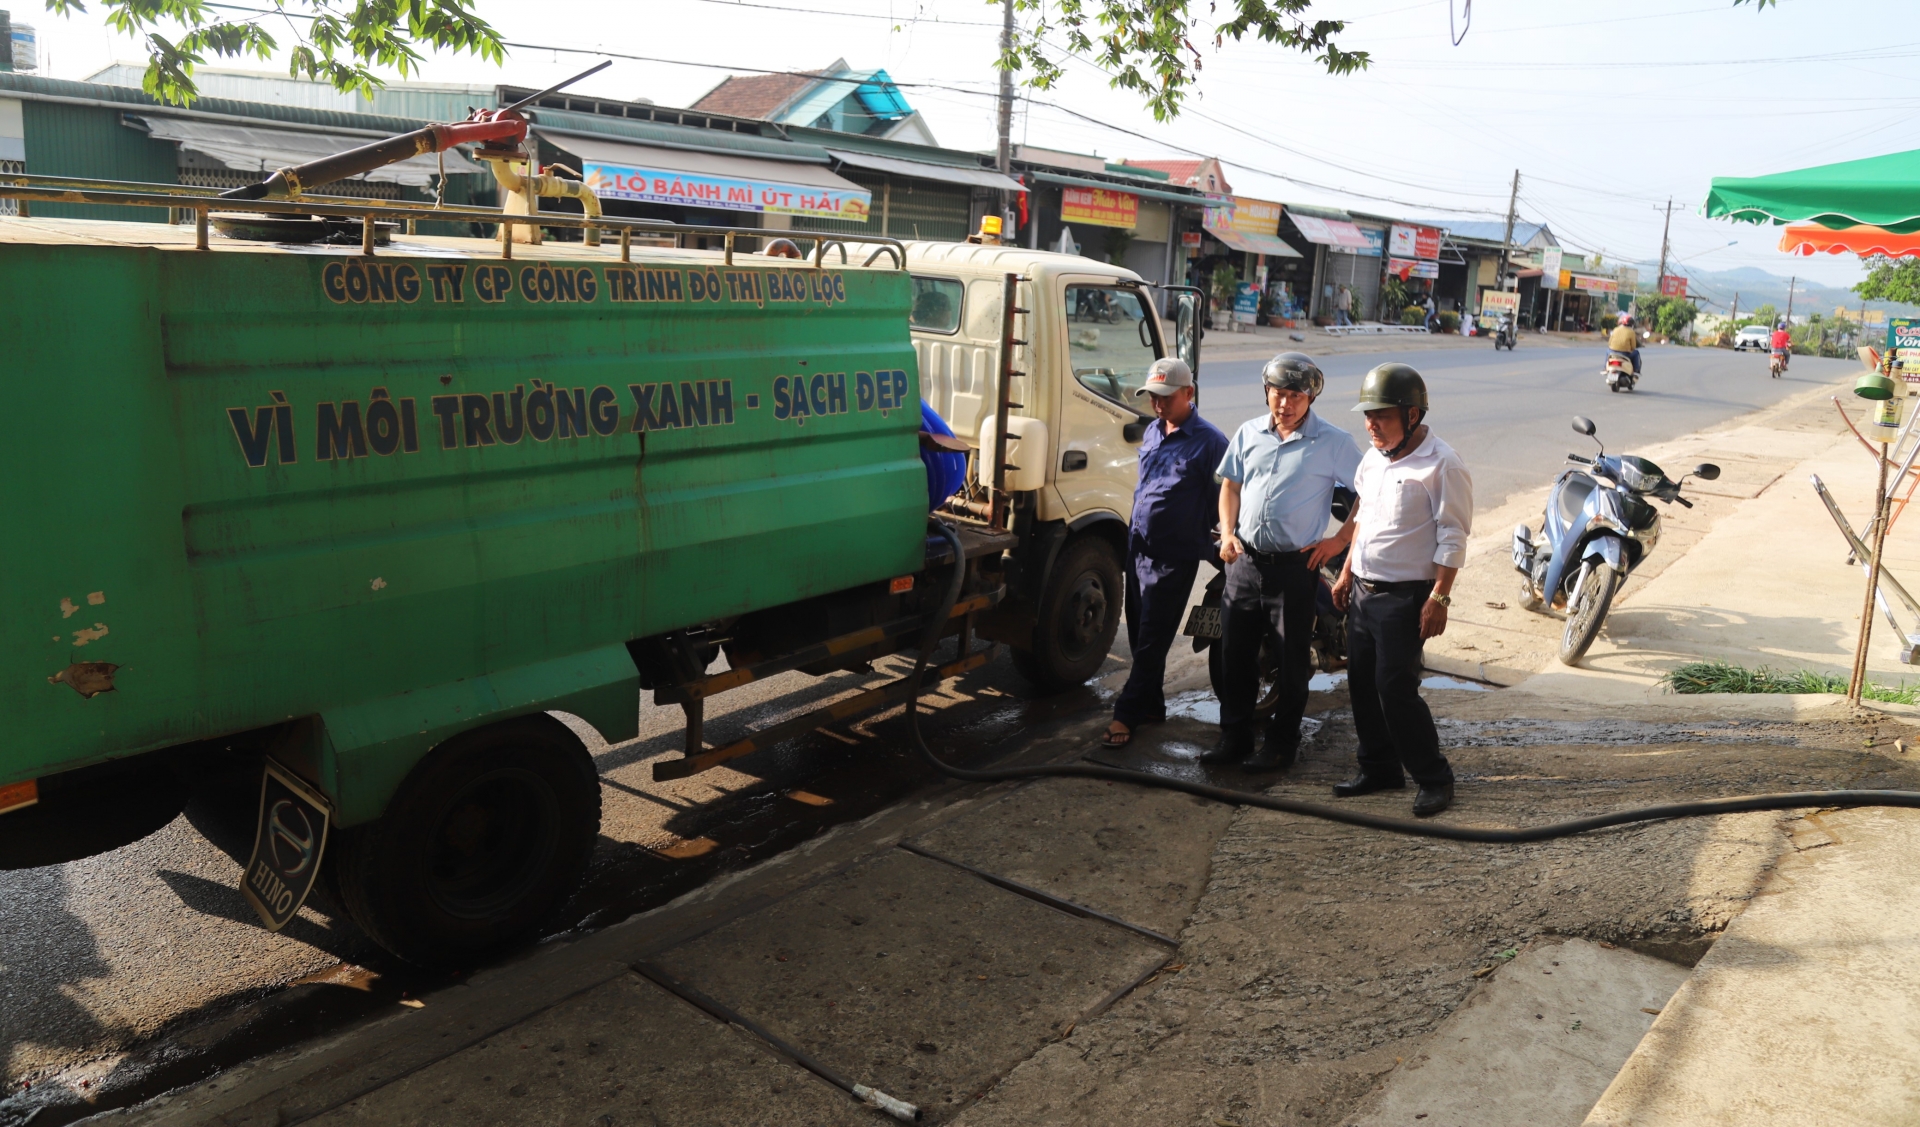 UBND TP Bảo Lộc huy động xe bồn chở nước về phục vụ người dân Thôn 3 (xã Đại Lào) giải cơn khát giữa cao điểm nắng hạn